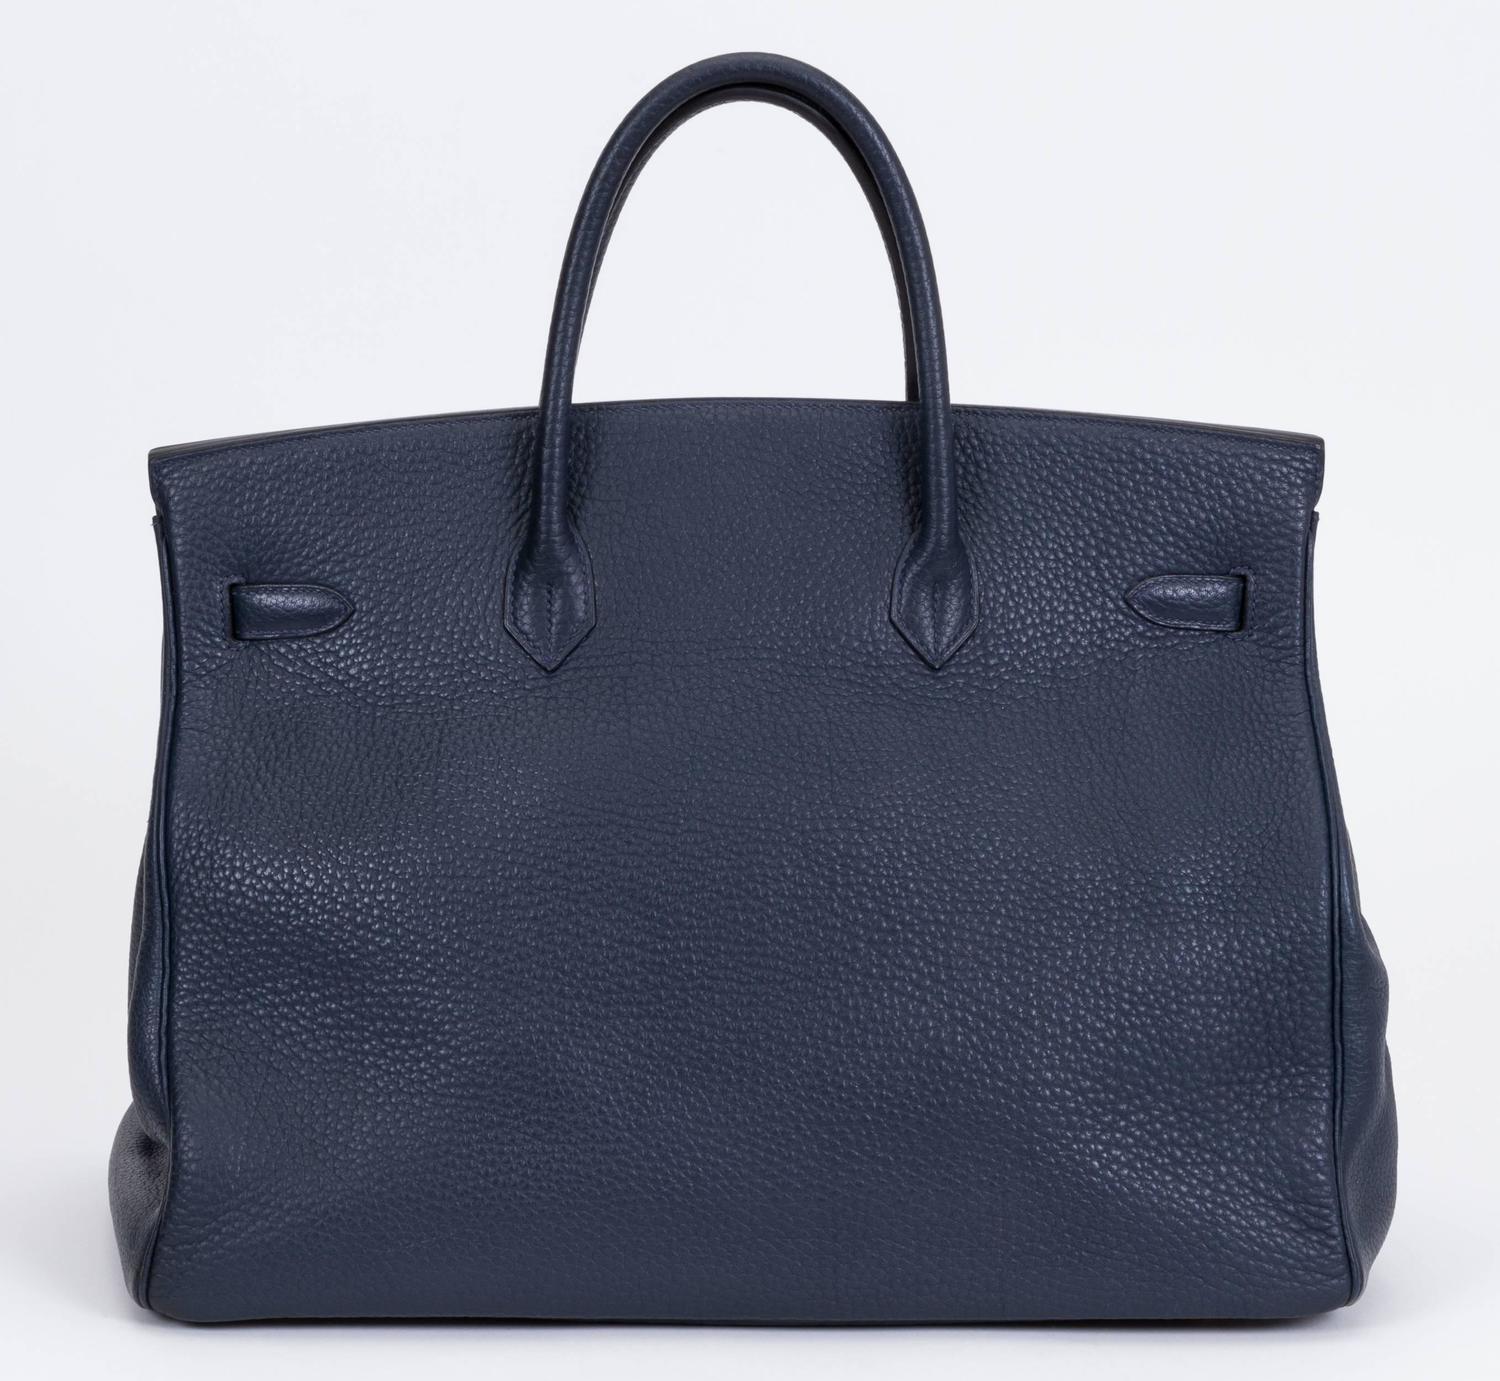 Hermès Birkin 40cm Navy and Gold Togo Bag For Sale at 1stdibs